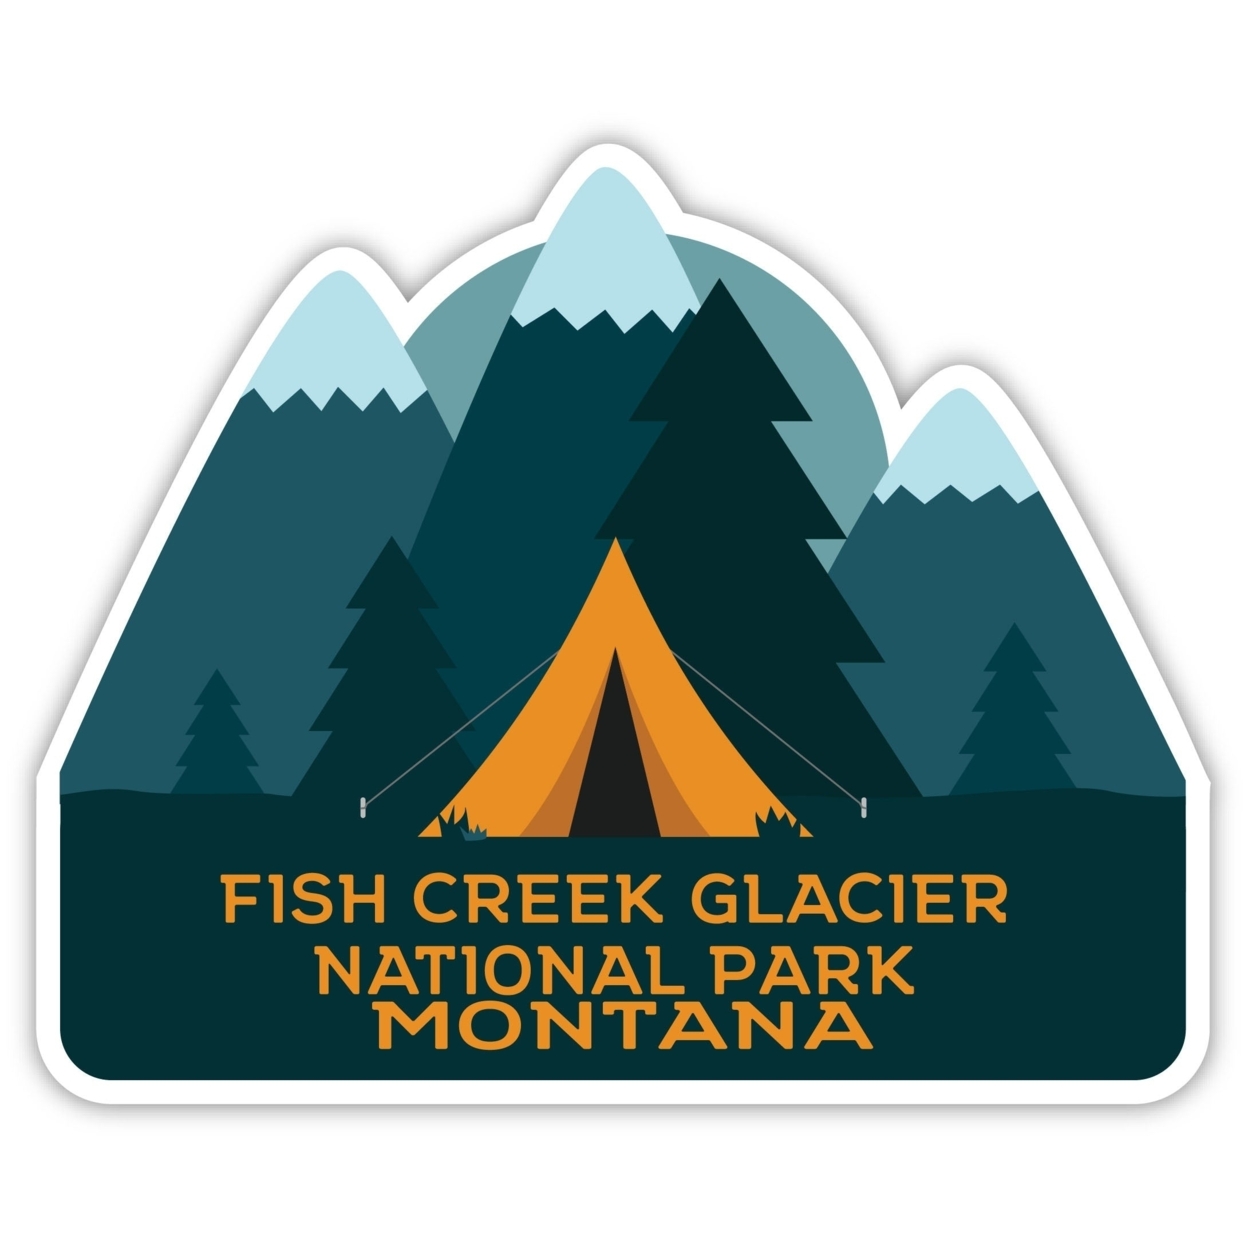 Fish Creek Glacier National Park Montana Souvenir Decorative Stickers (Choose Theme And Size) - Single Unit, 6-Inch, Tent